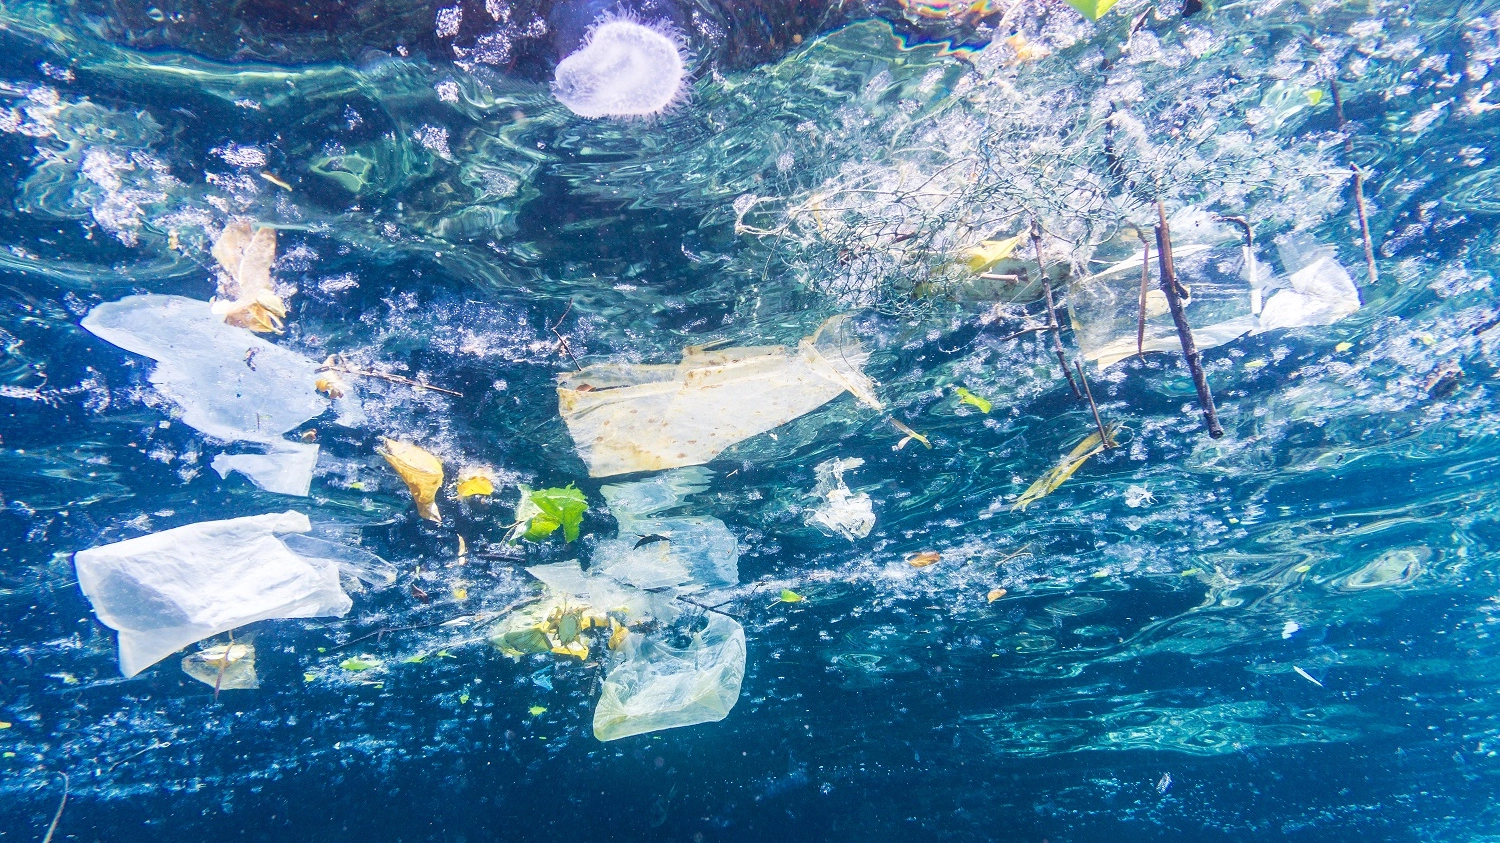 La plastica che inquina gli oceani (Omaggio)